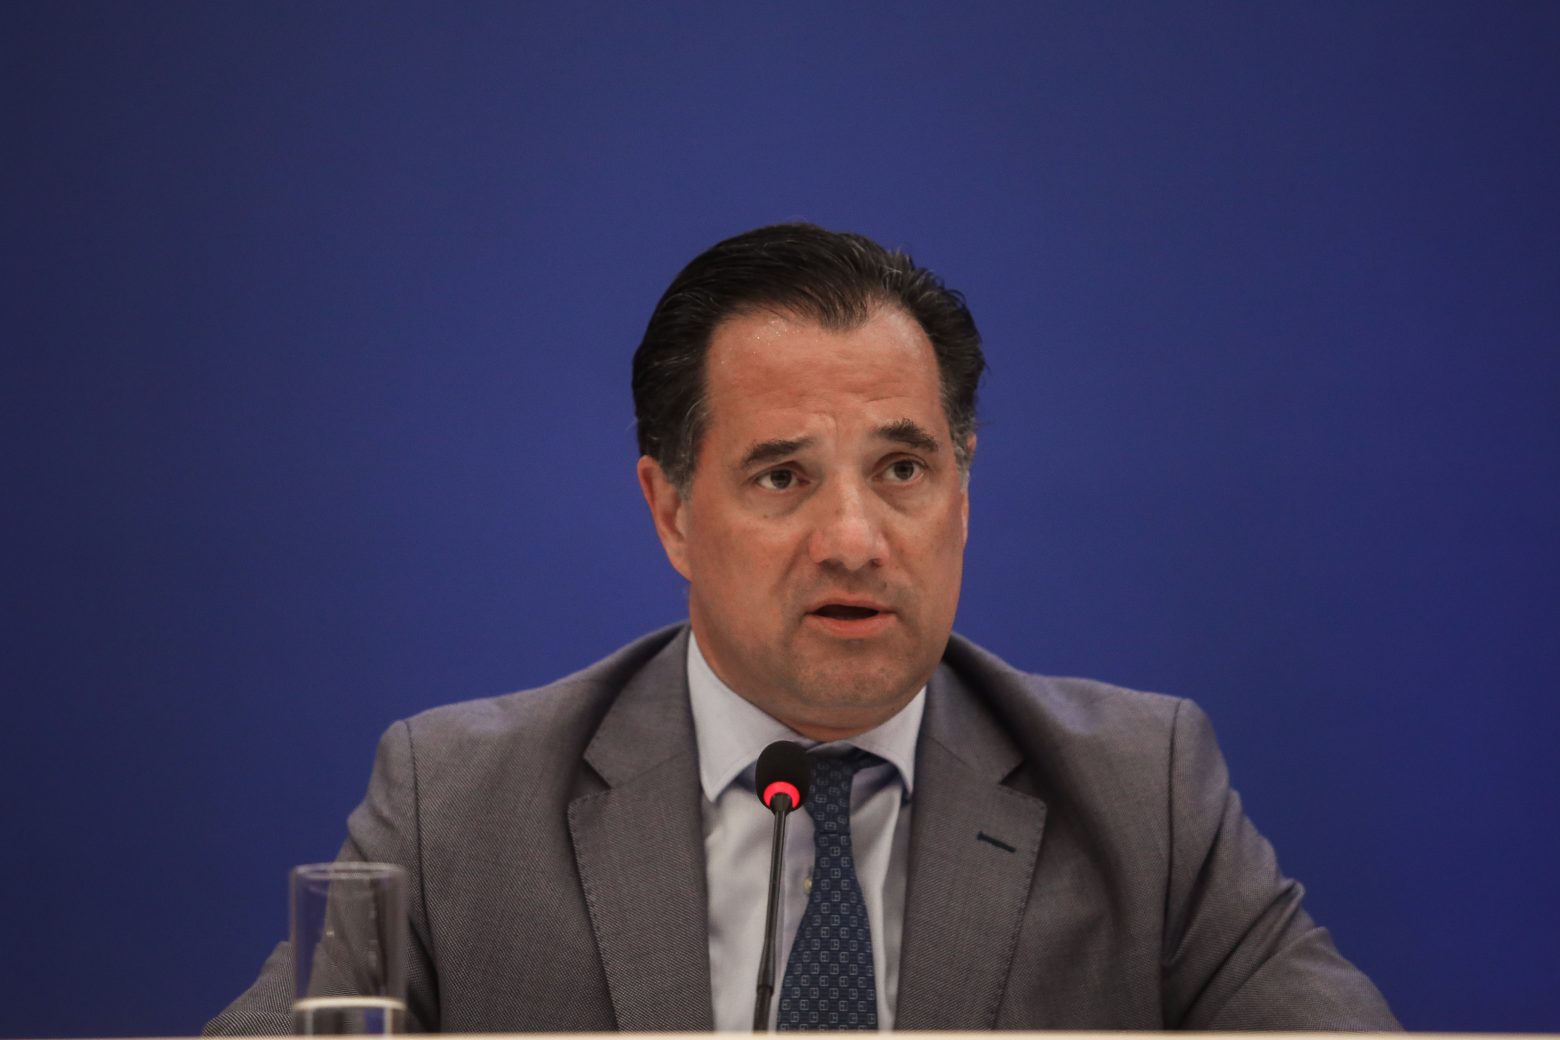 Σε ανάρτησή του ο υπουργός Υγείας απαντά σε σχόλια του βουλευτή του ΣΥΡΙΖΑ σχετικά με το Νοσοκομείο Σαντορίνης